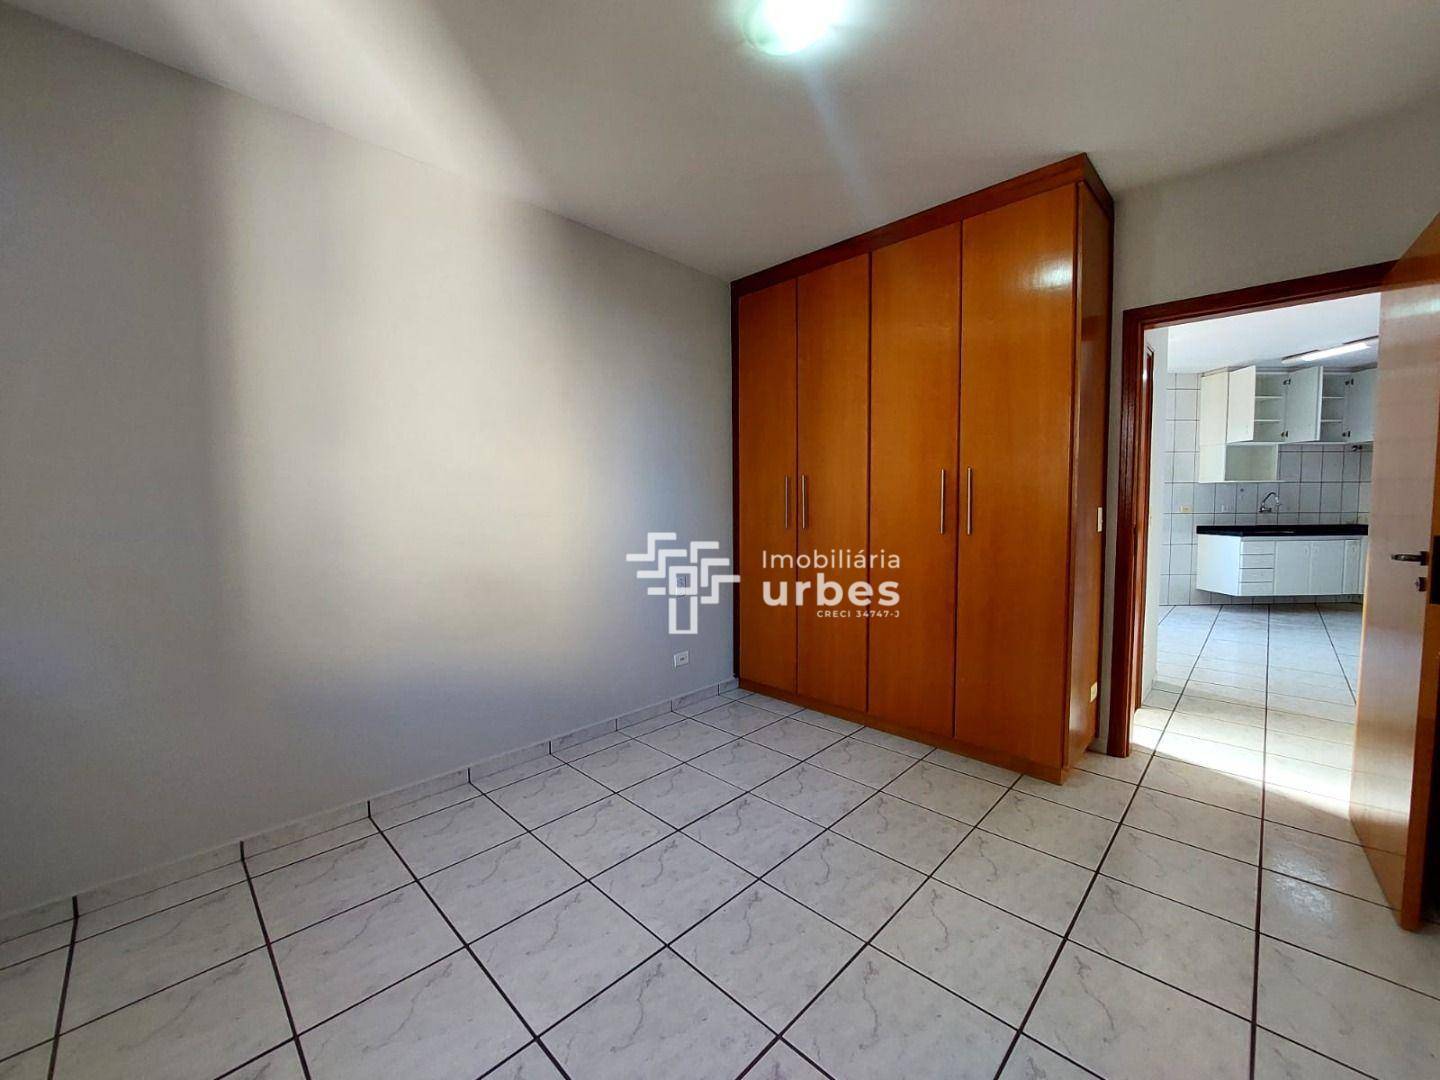 Apartamento, 1 quarto, 45 m² - Foto 5